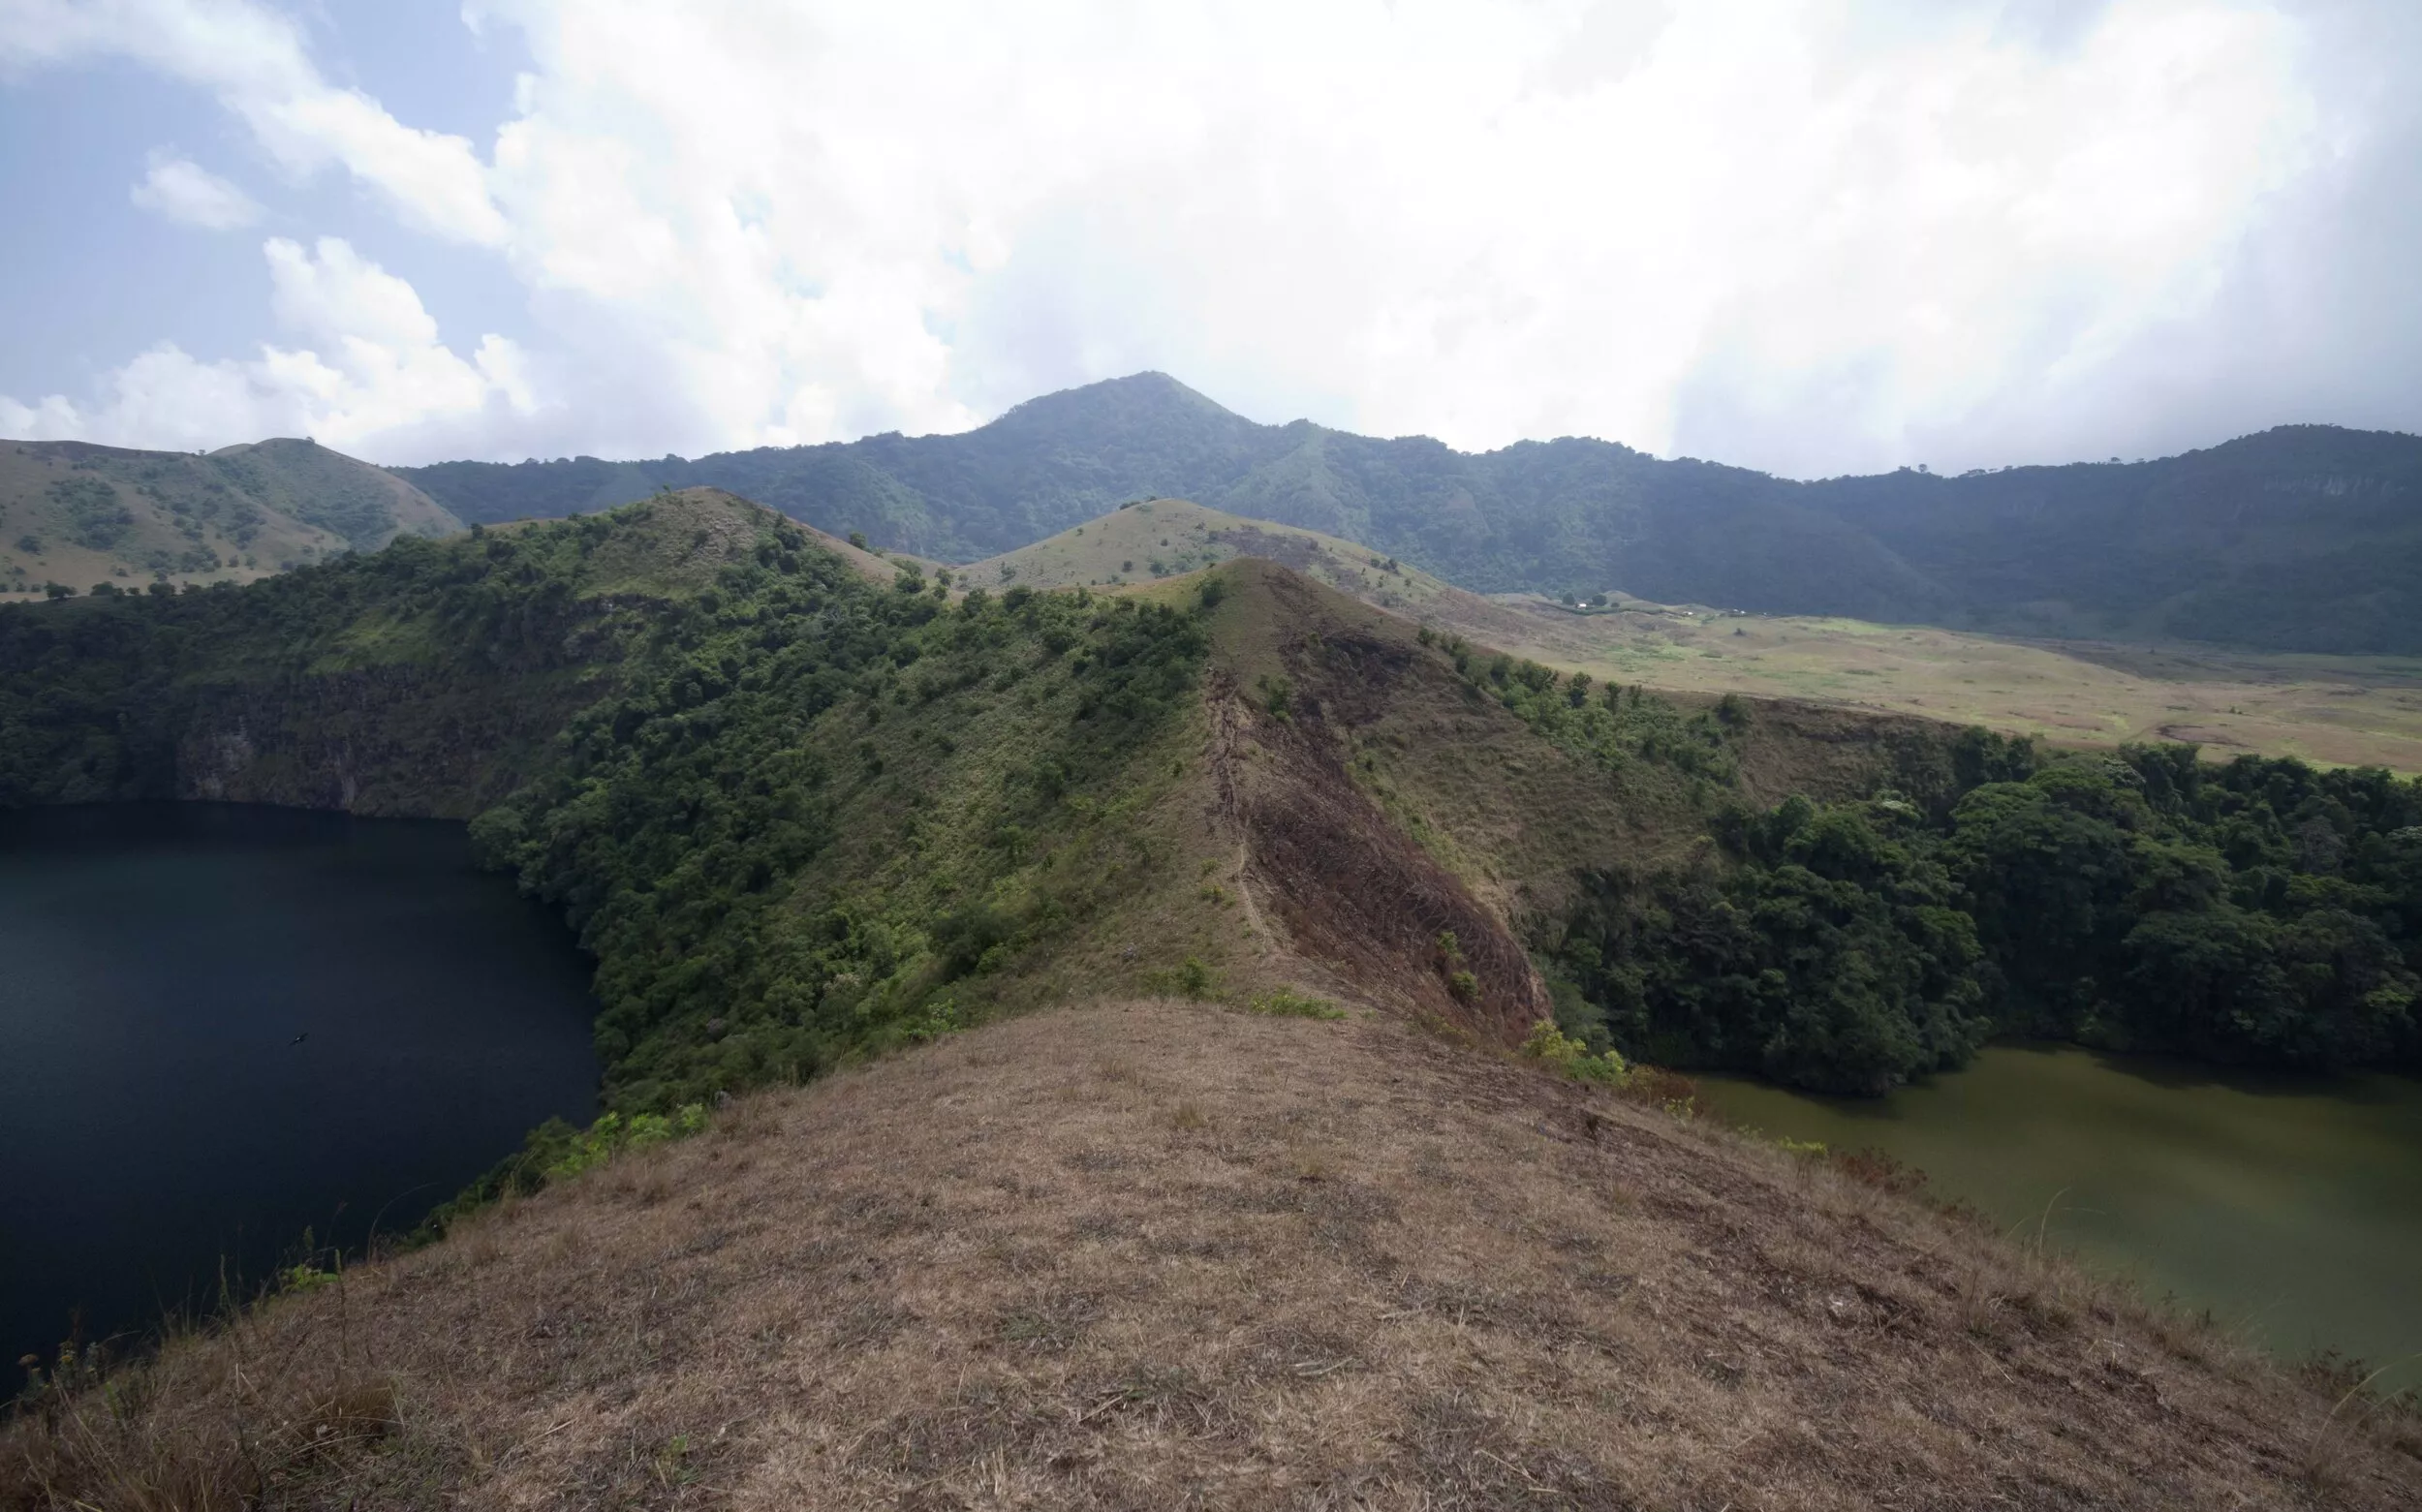 Mount Muanenguba in Cameroon, Africa | Volcanos,Trekking & Hiking - Rated 0.8